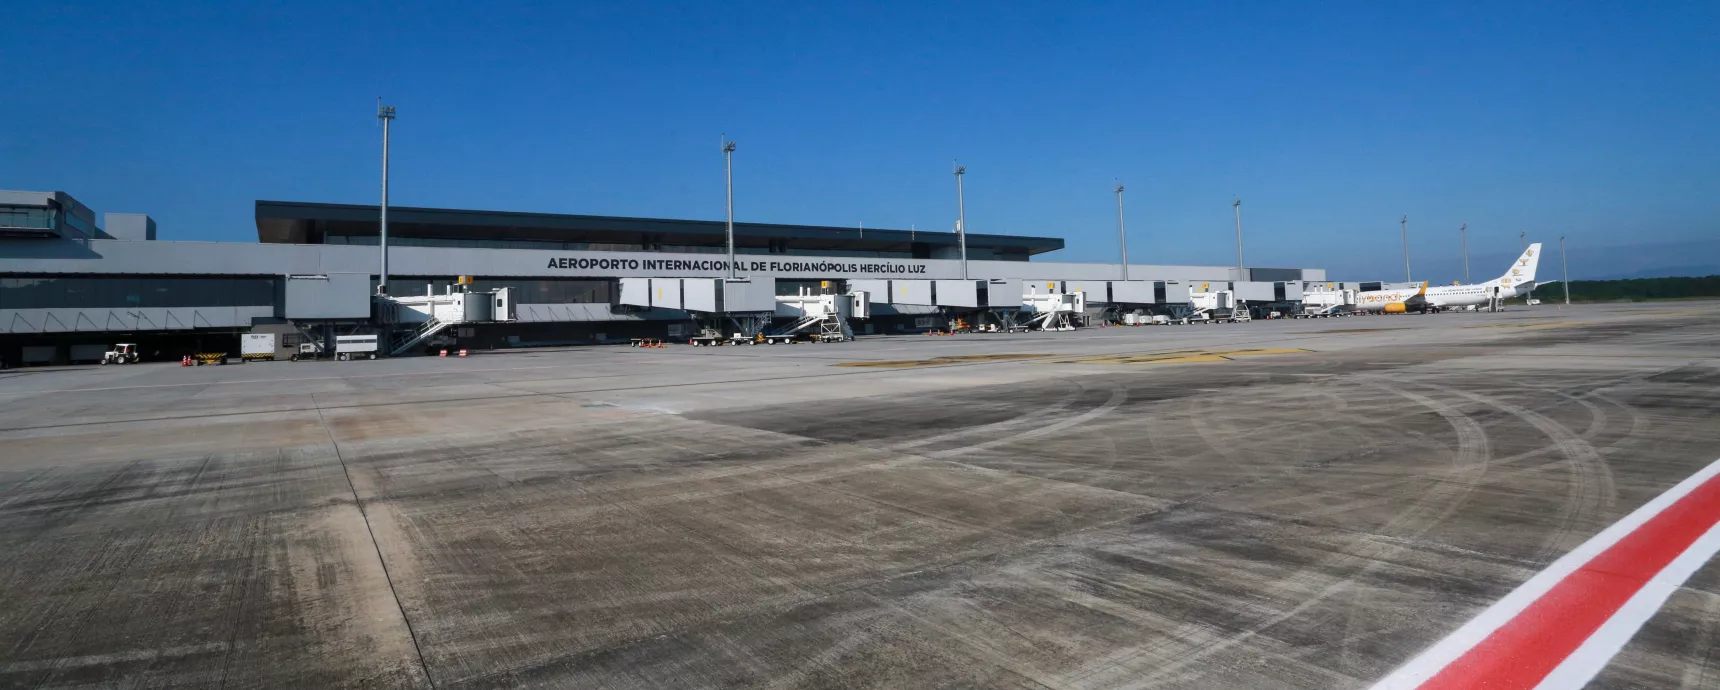 Malha aérea e rodoviária emergencial do Aeroporto Internacional de Florianópolis para o Rio Grande do Sul